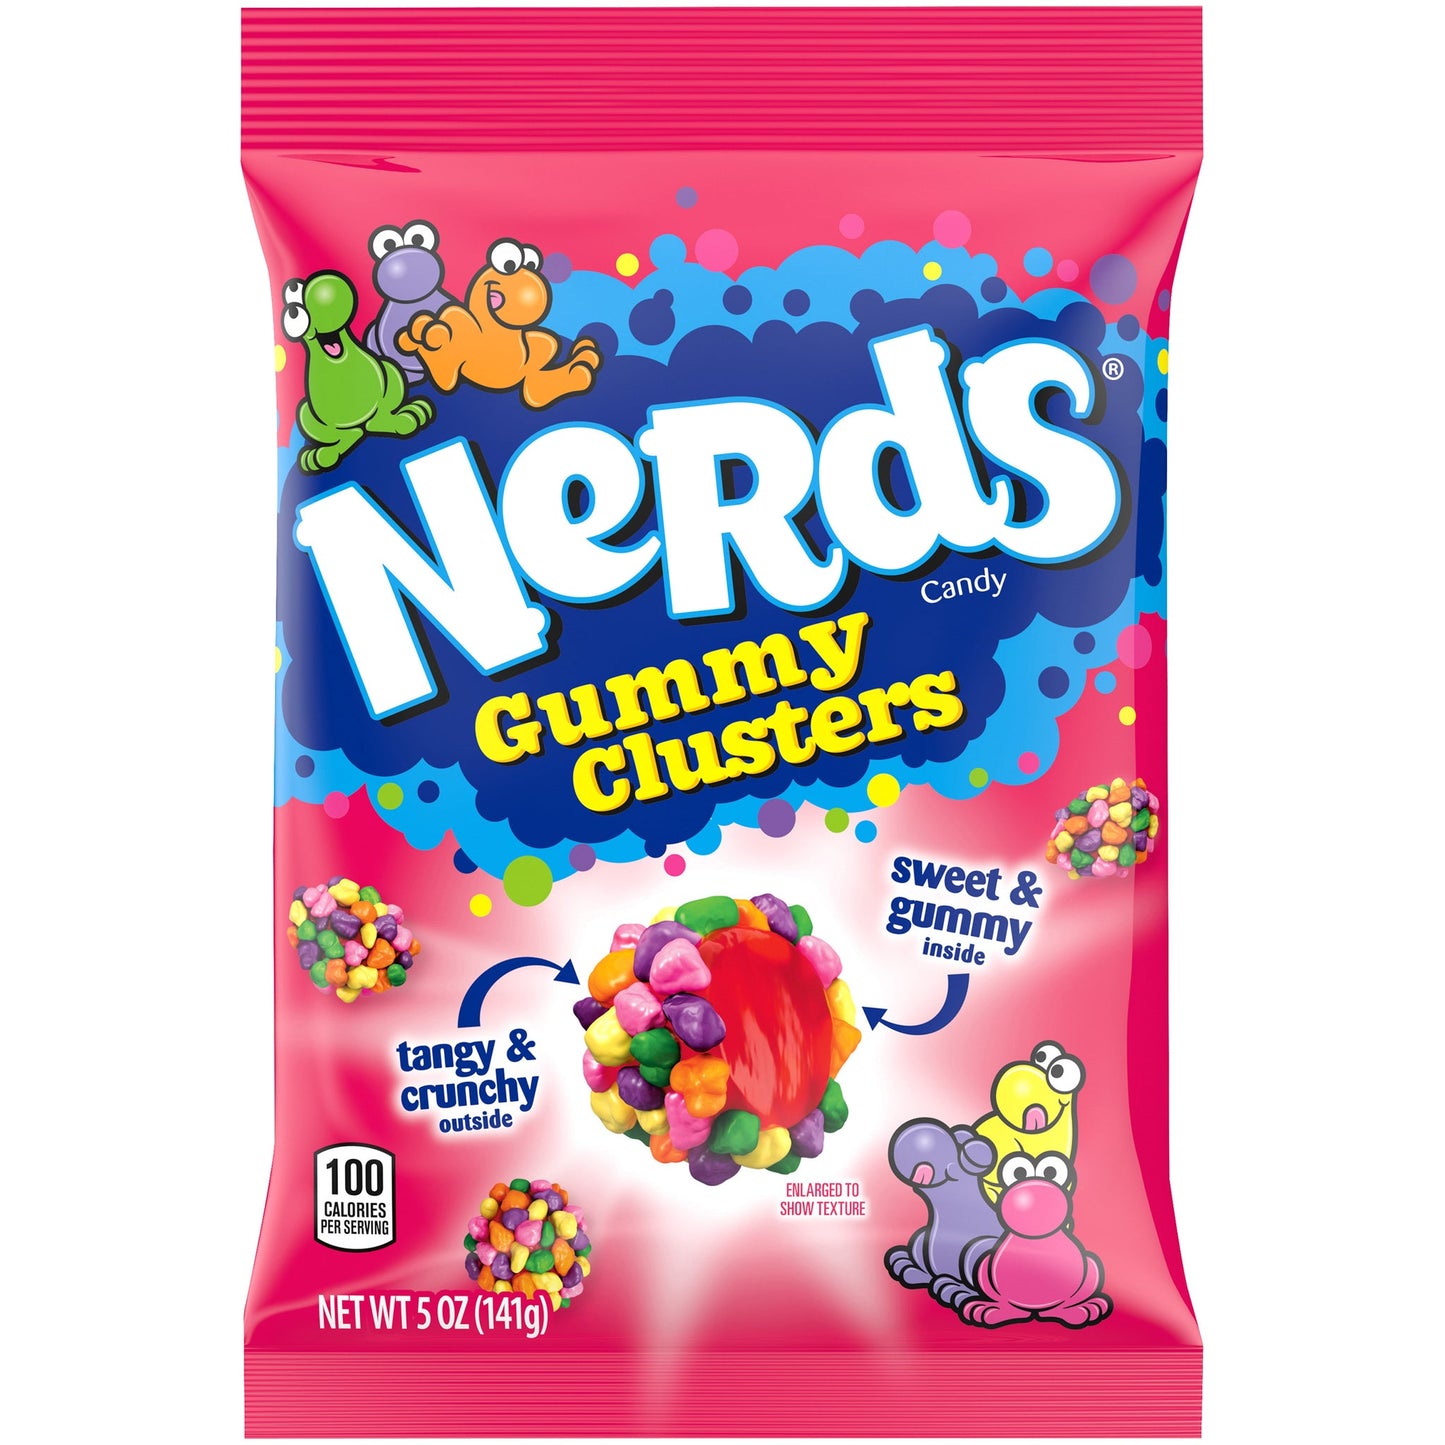 Nerd Gummy Clusters 5 oz